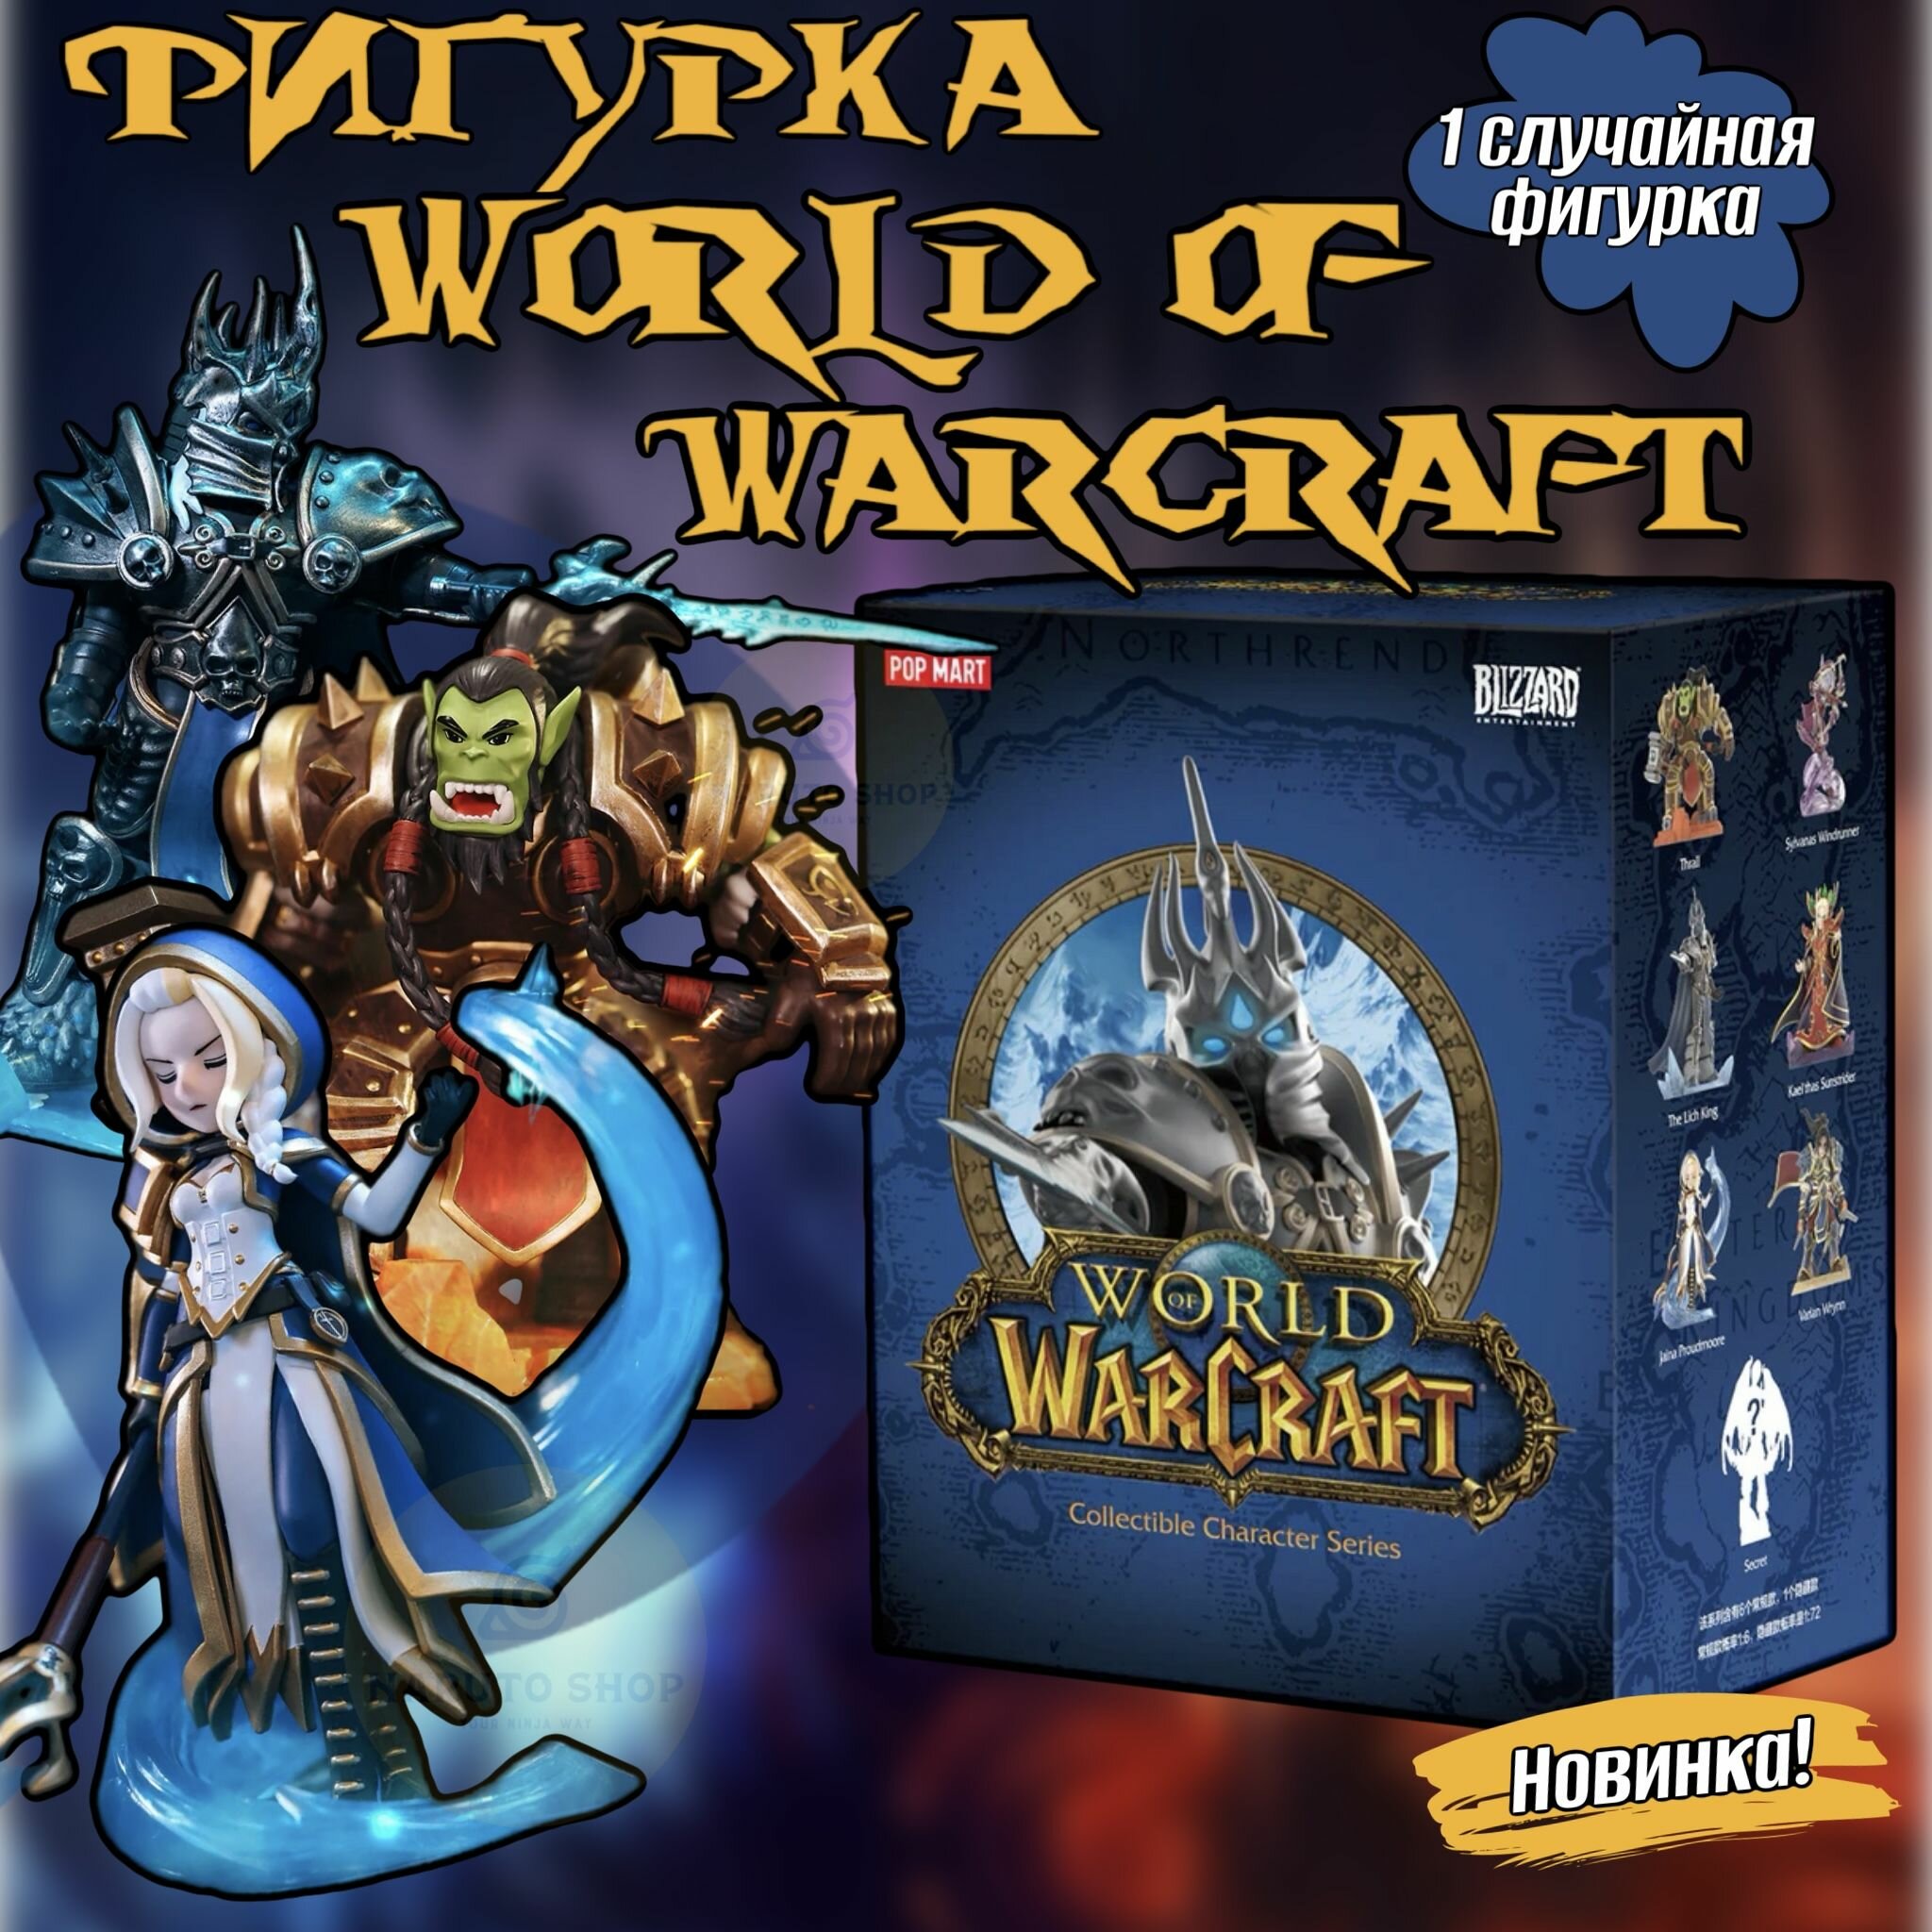 Коллекционные фигурки Ворлд оф Варкрафт ПОП март / World of Warcraft POP MART